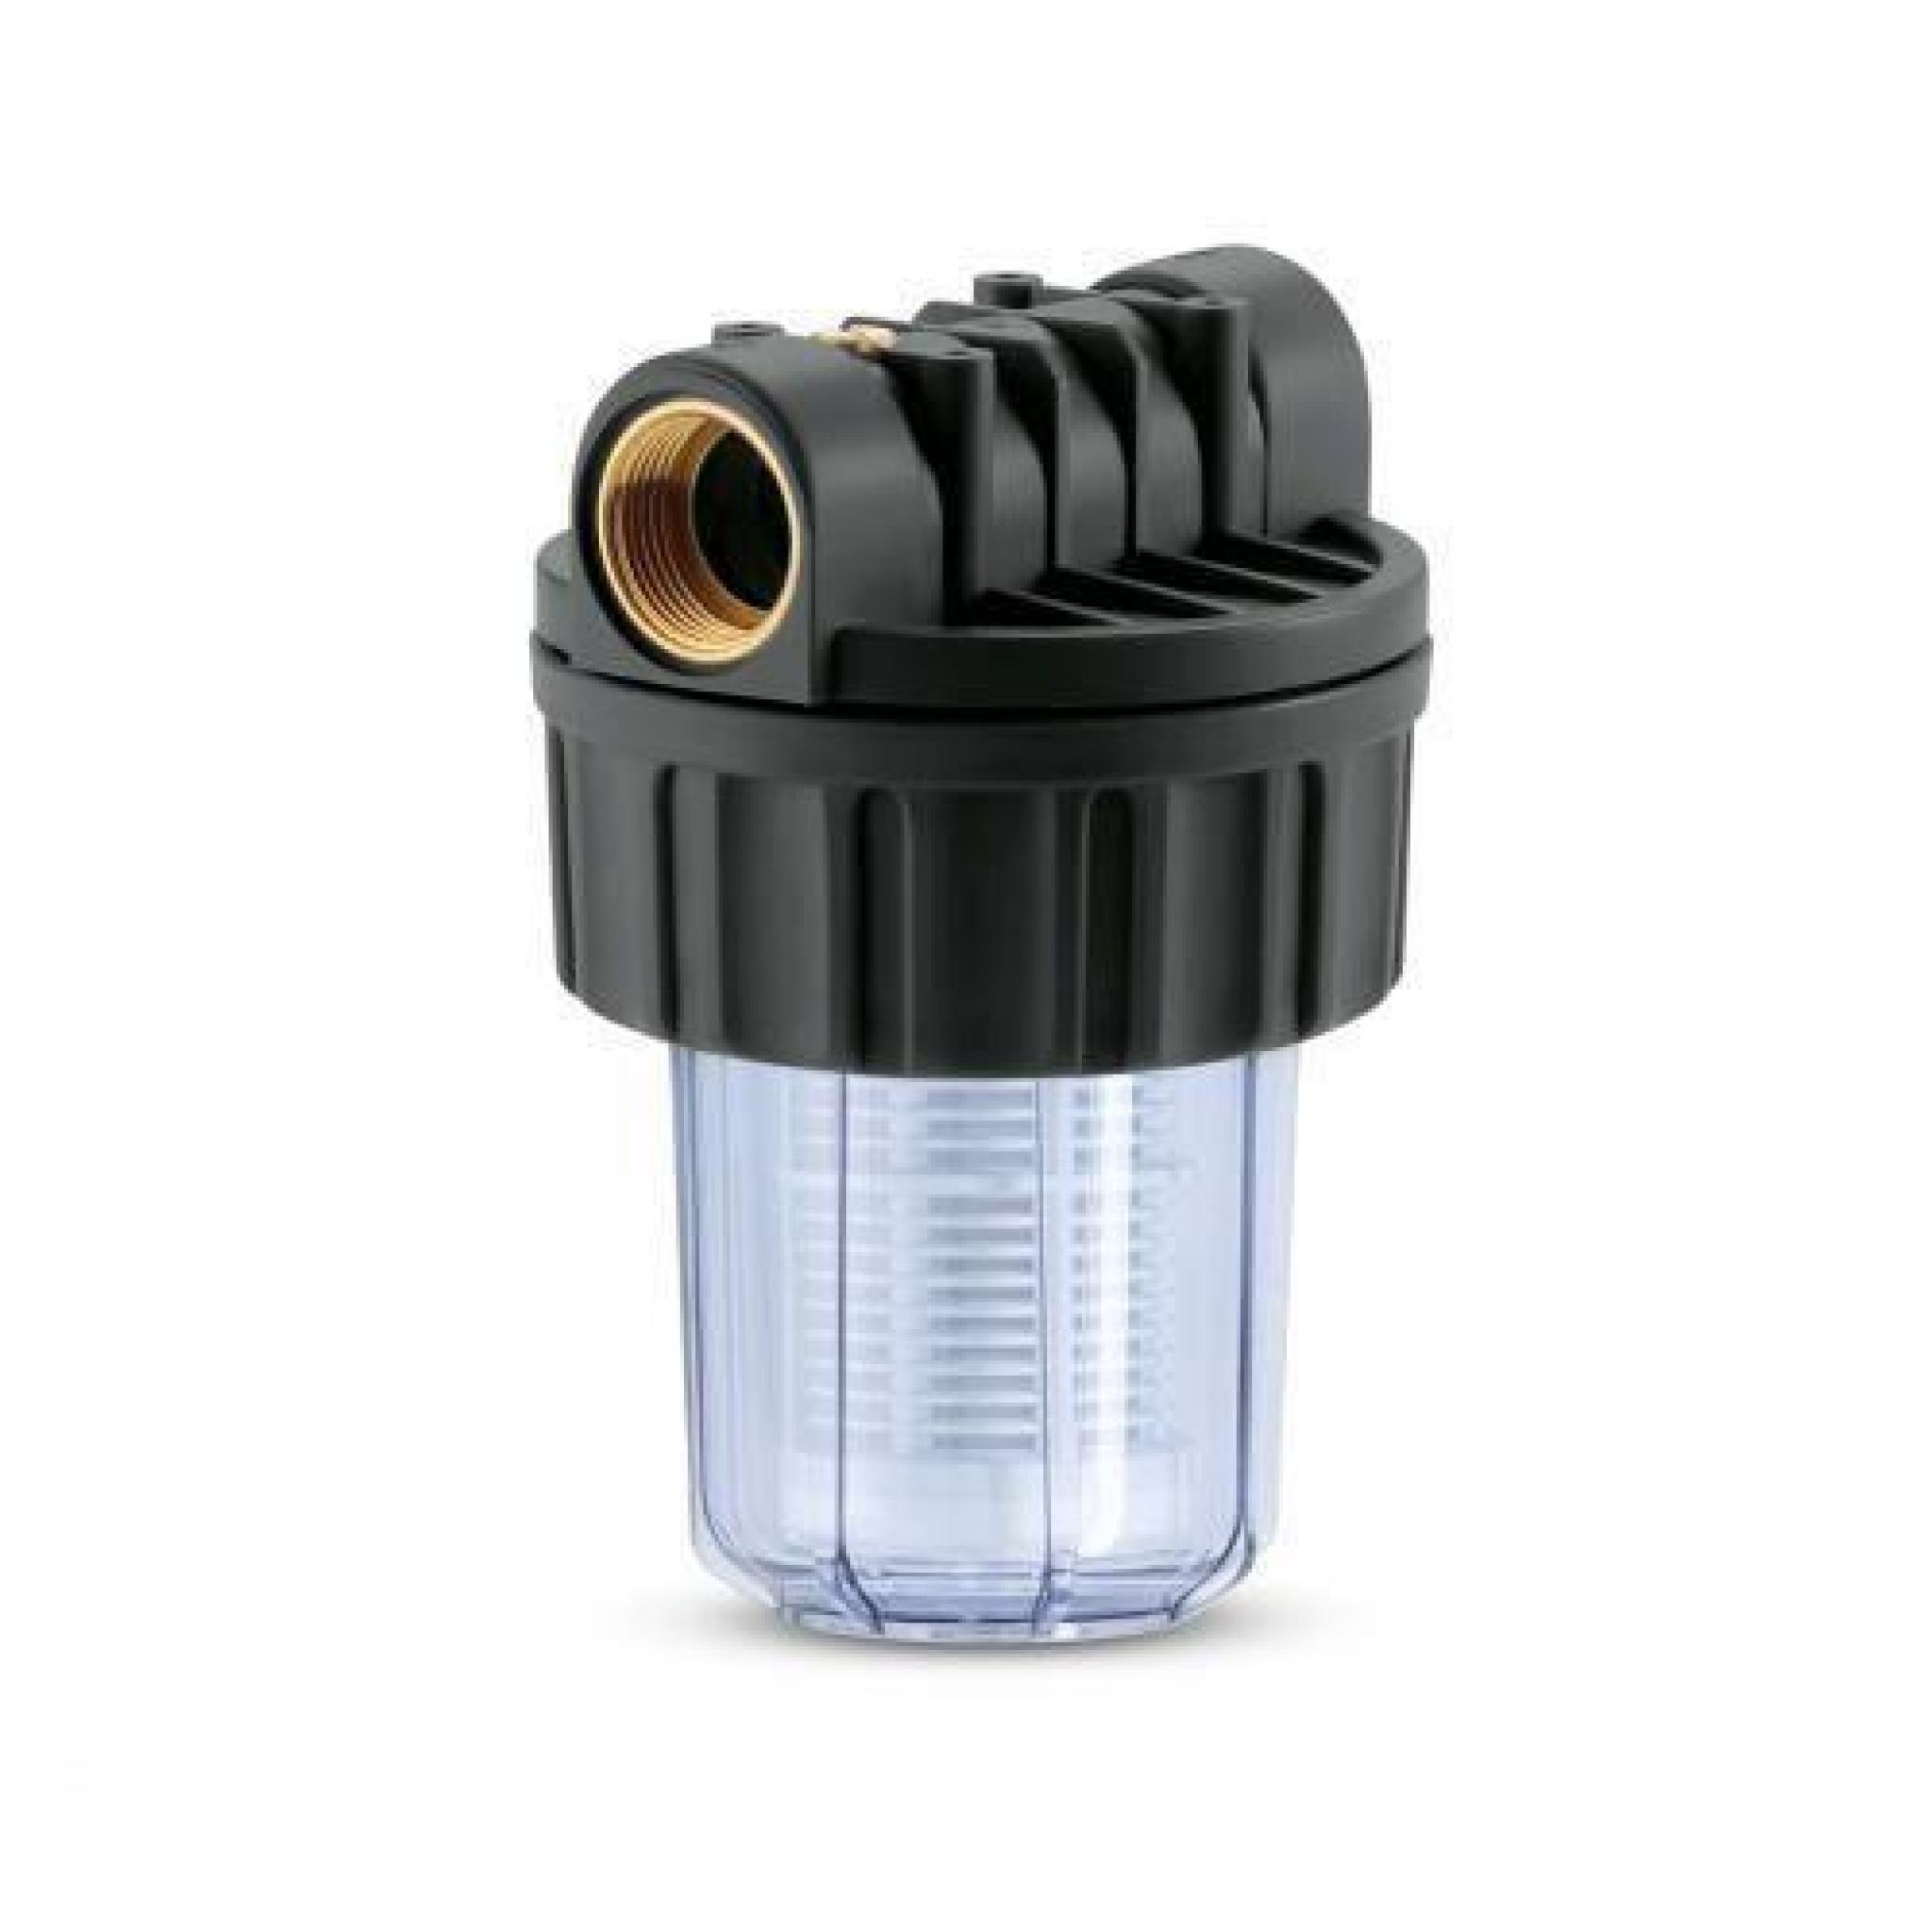 Pre-filtre pour pompe d'Arrosage petit modele (debit = 3000 L/H)